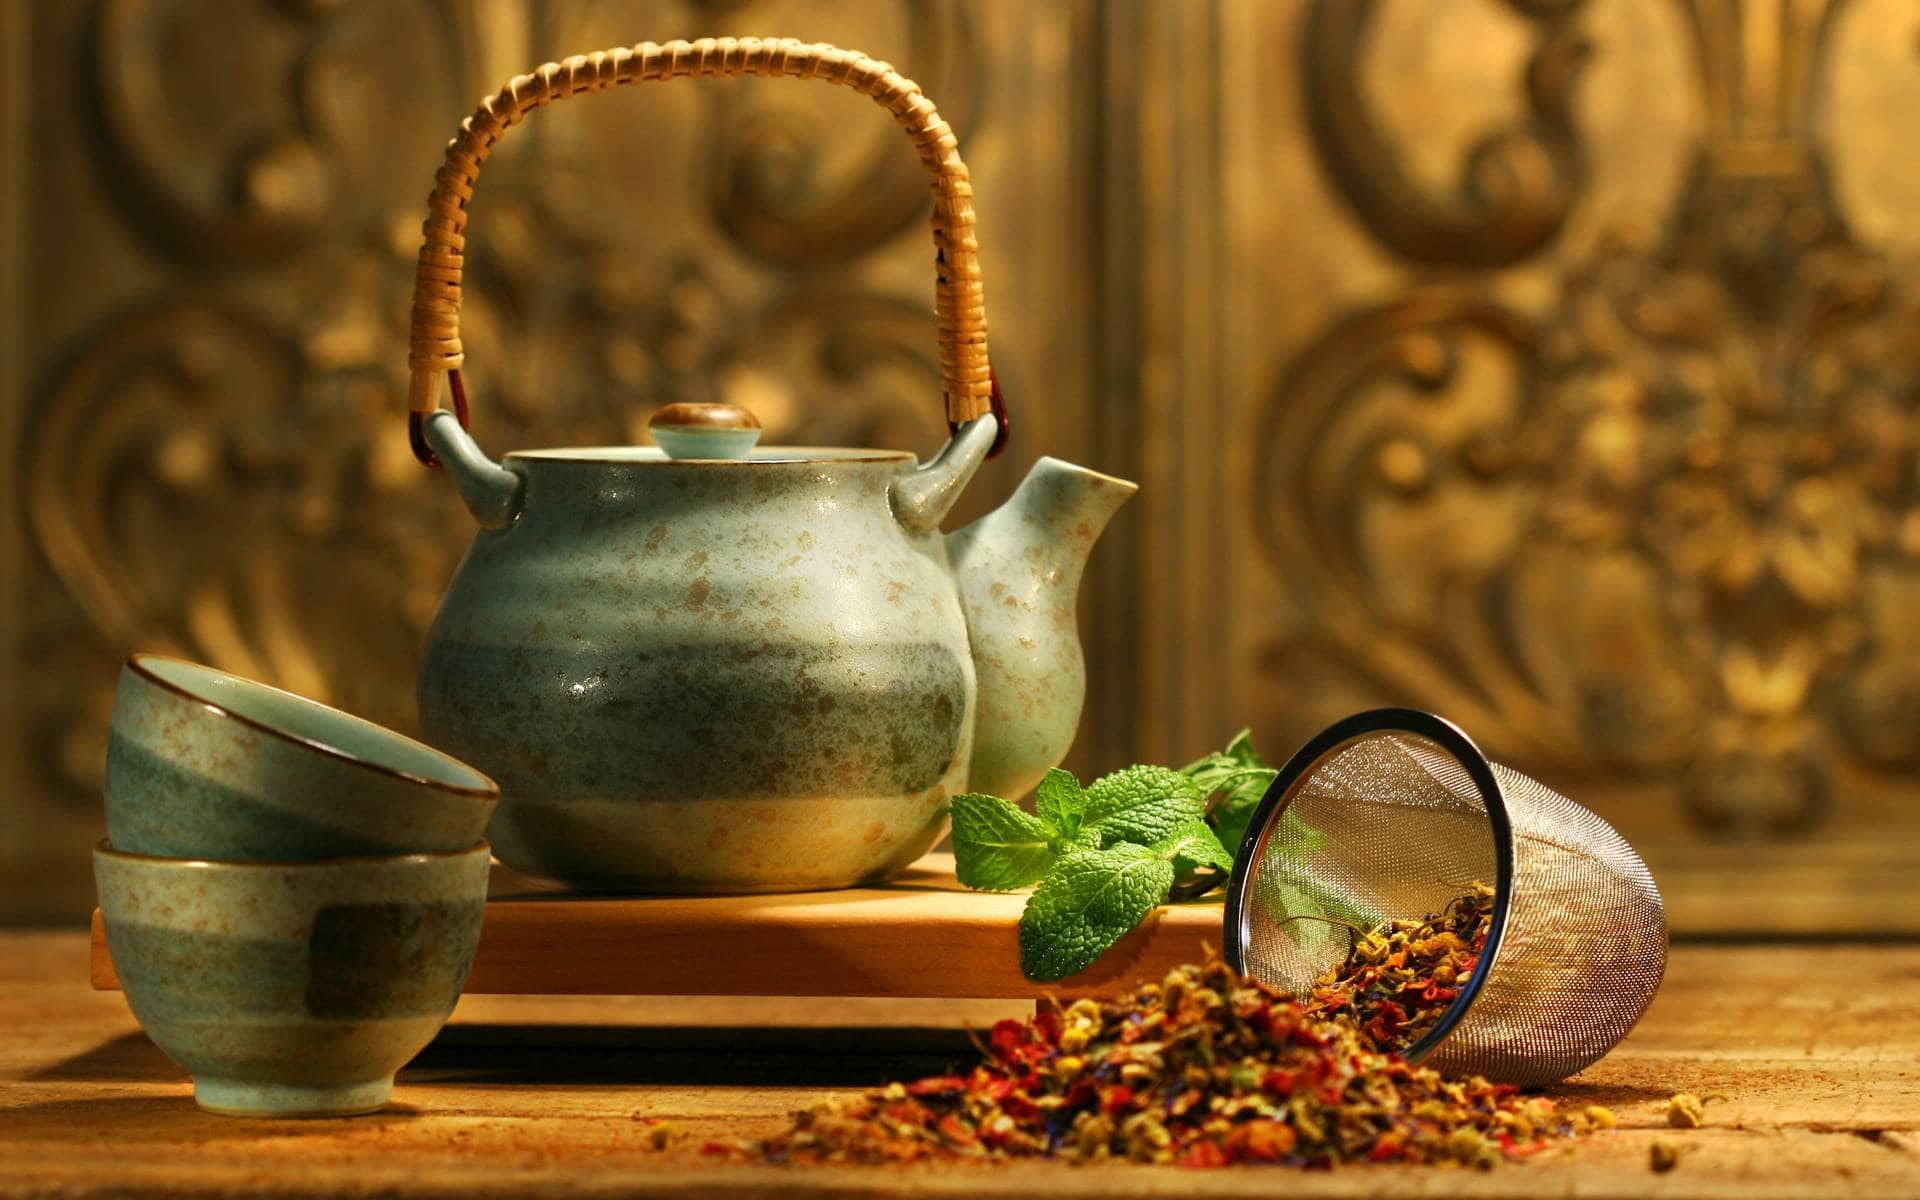 Как Заваривать Чай В Заварнике С Ситечком - описание и основные характеристики